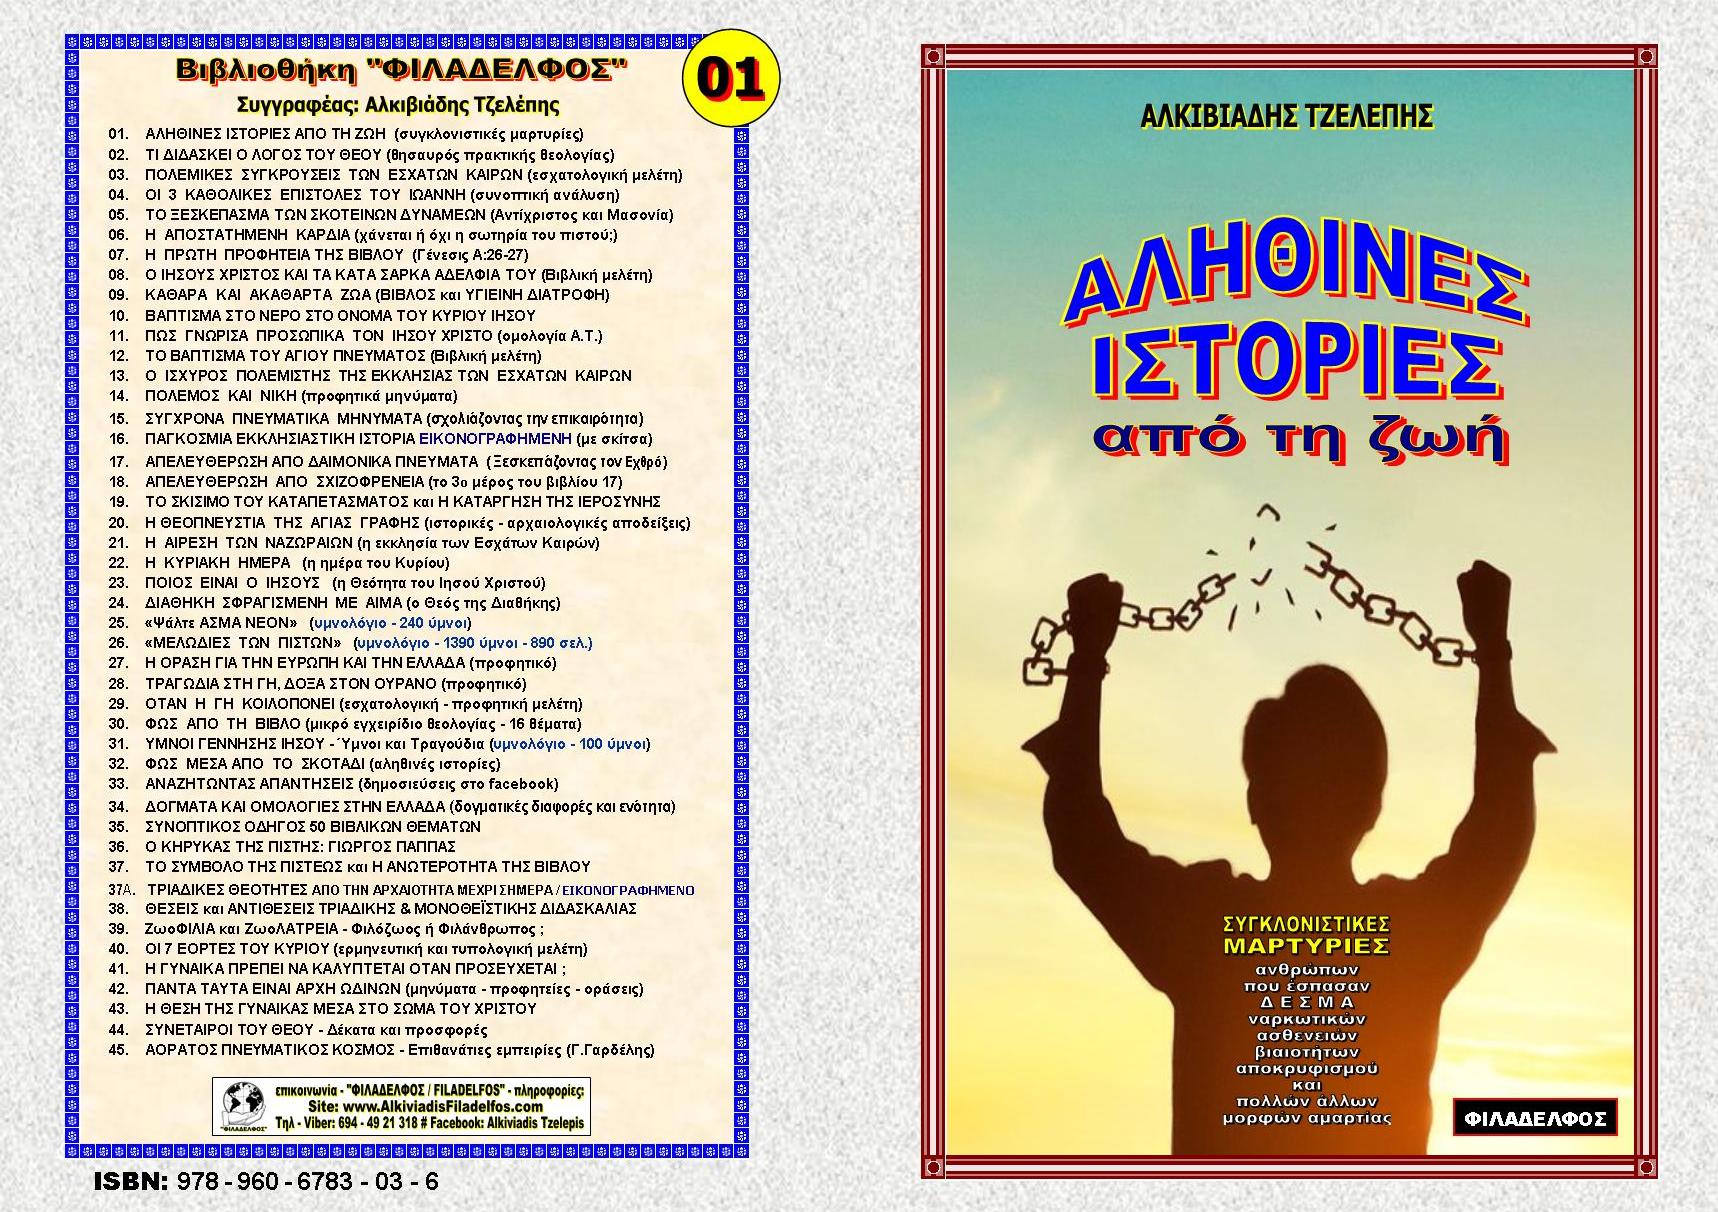 ALITHINES ISTORIES Exofyllo 1